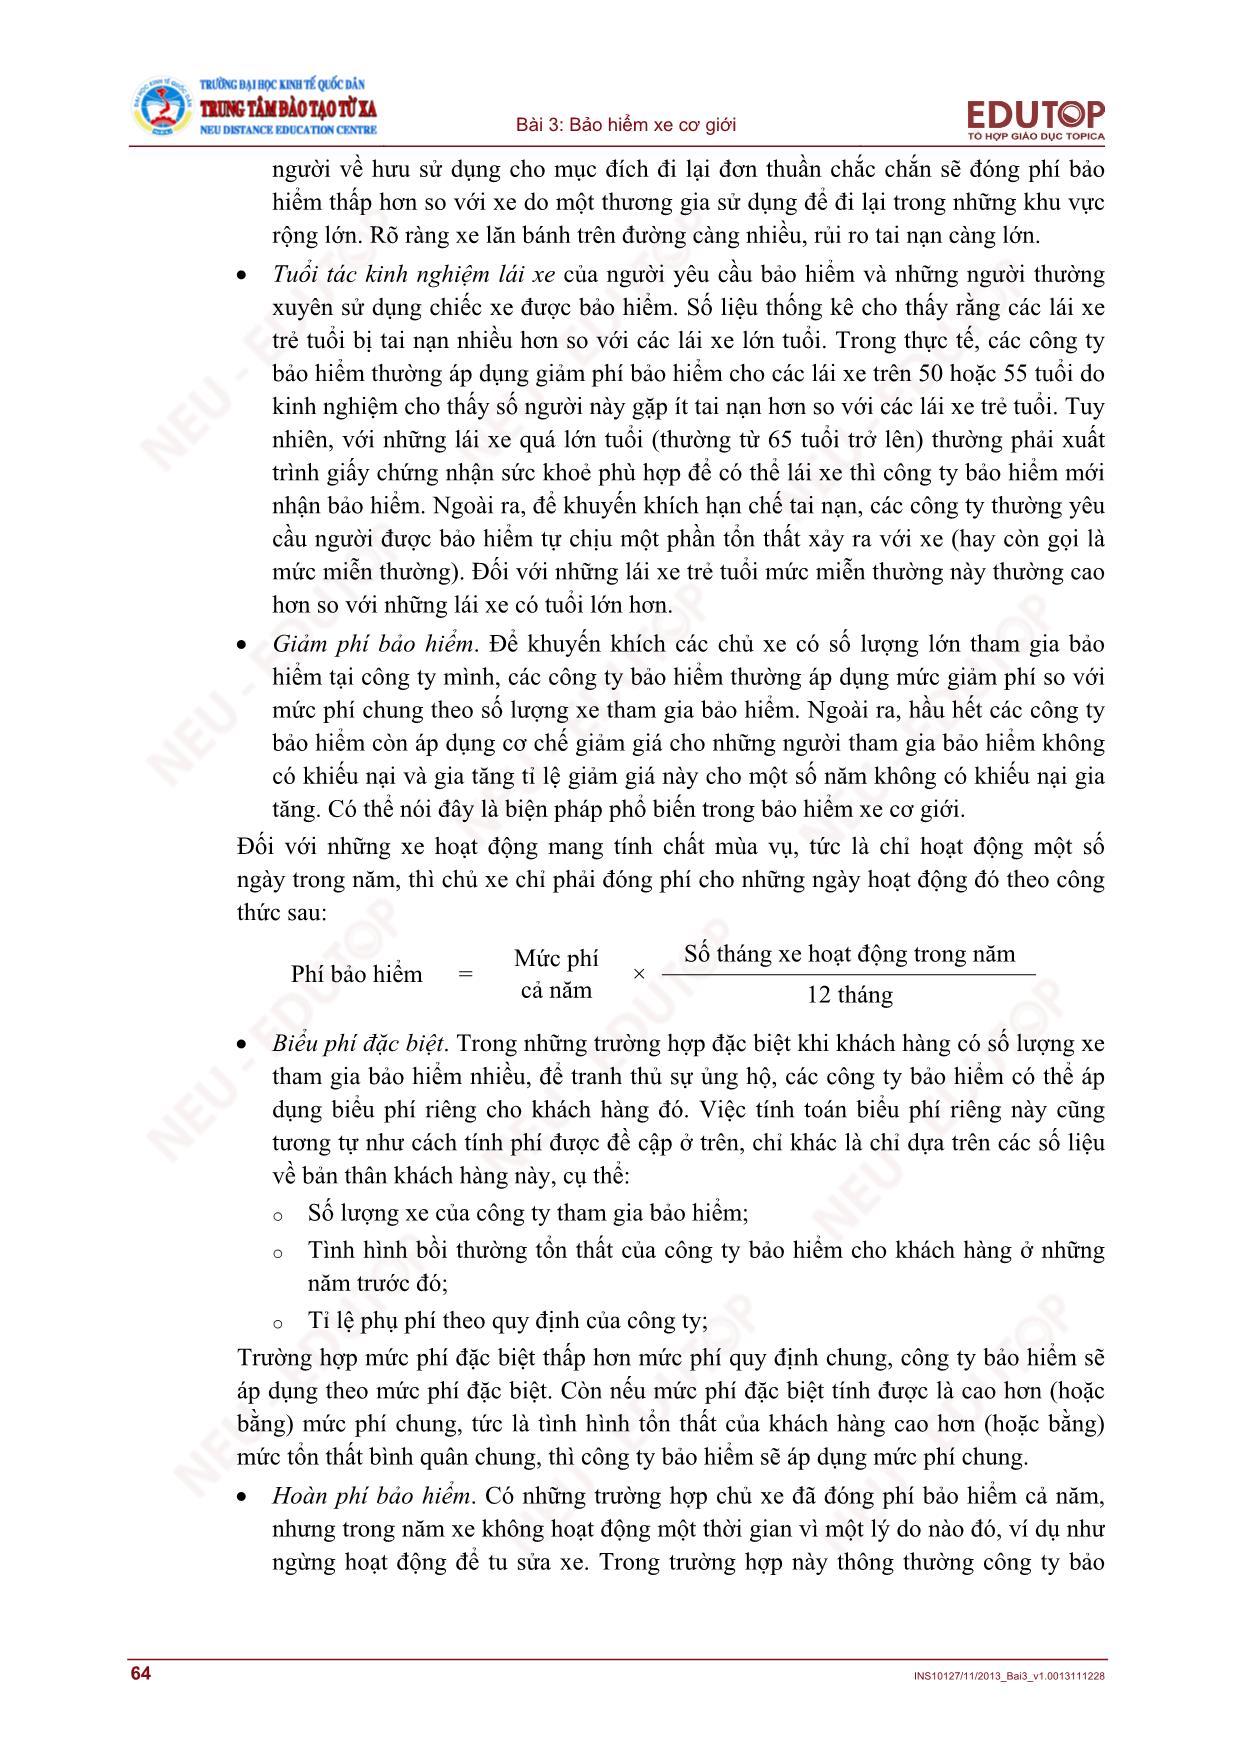 Bài giảng Bảo hiểm thương mại - Bài 3, Phần 2: Bảo hiểm xe cơ giới - Nguyễn Thị Lệ Huyền trang 10